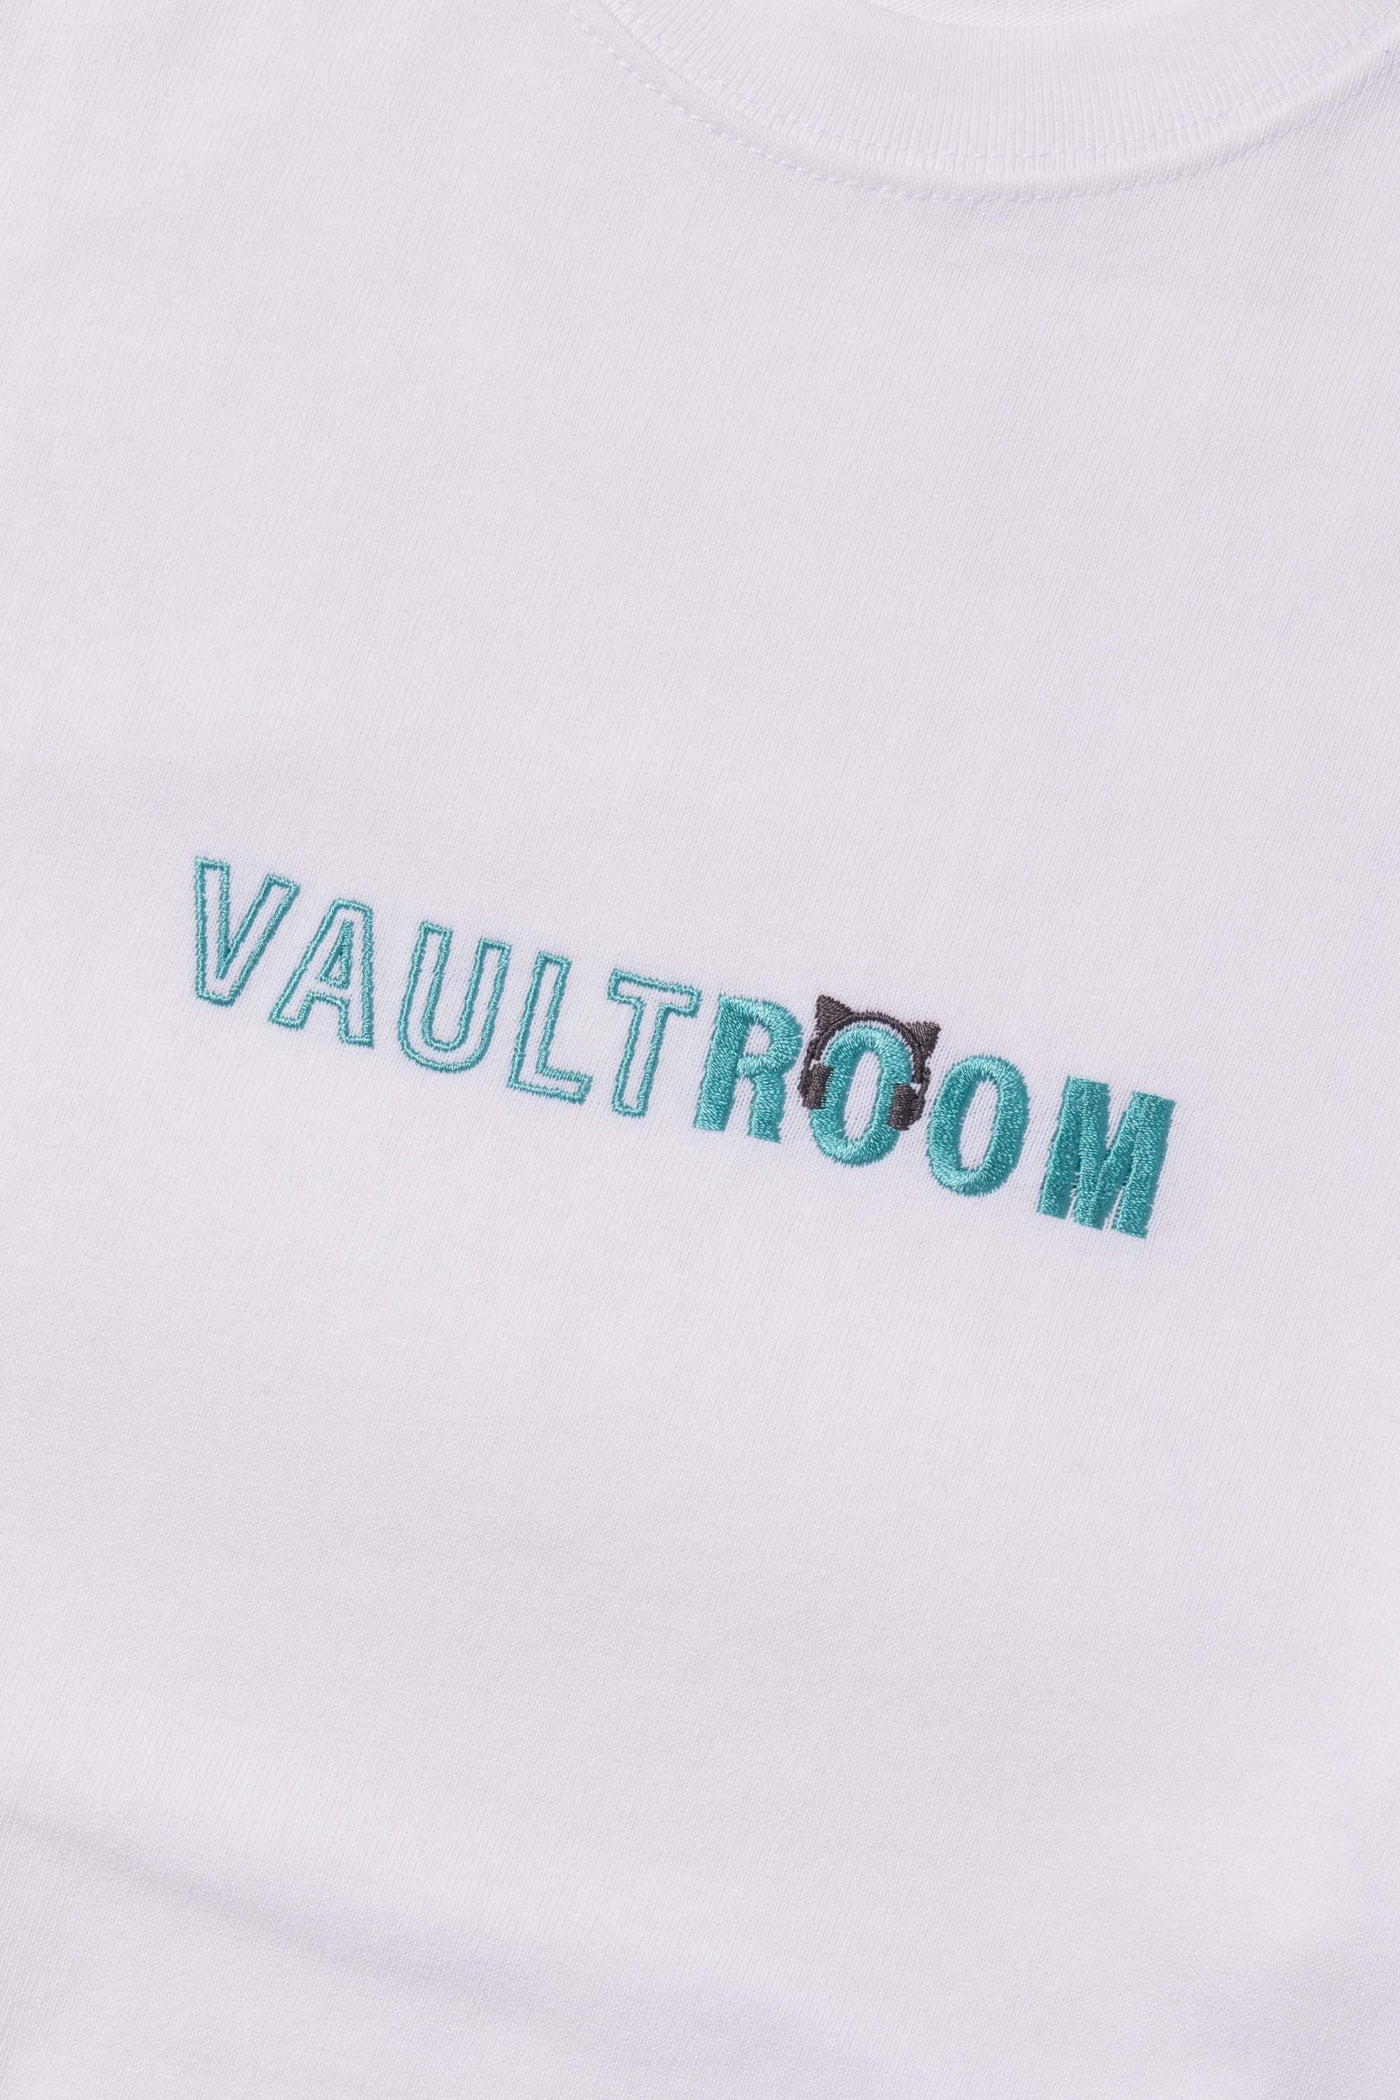 猫麦とろろ　vaultroom M VR × TORORO TEE / BLK新品未使用